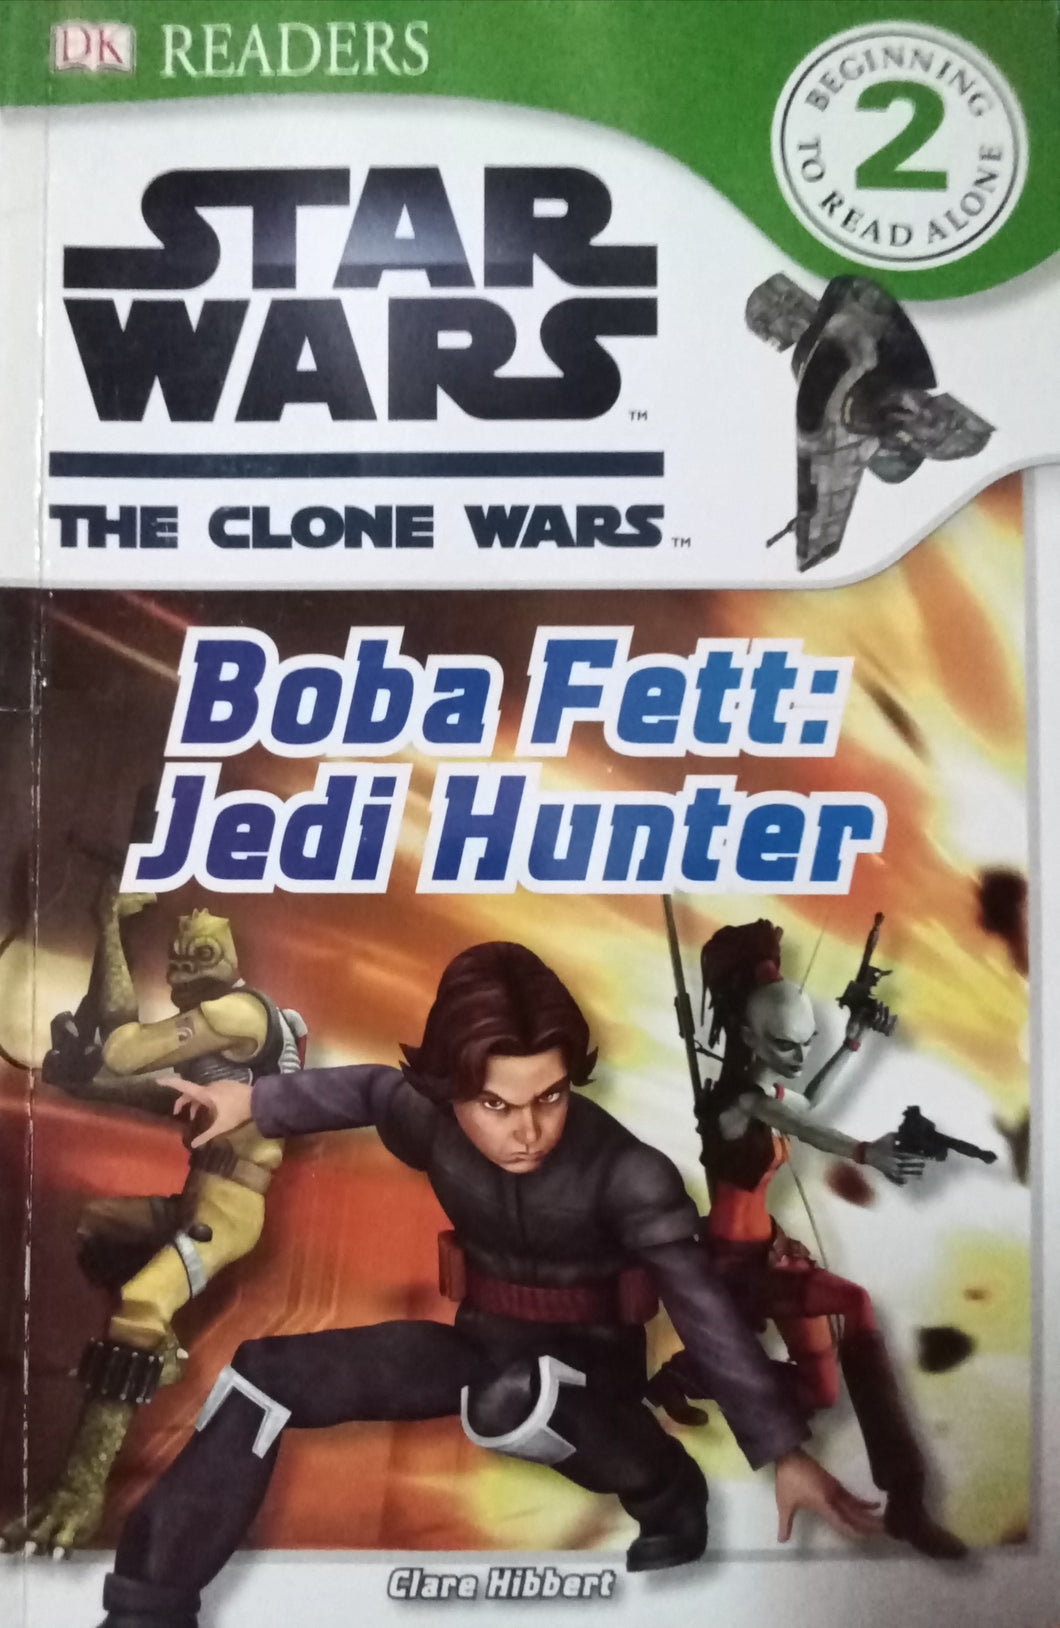 Star Wars The Clone Wars: Boba Fett Jedi Hunter